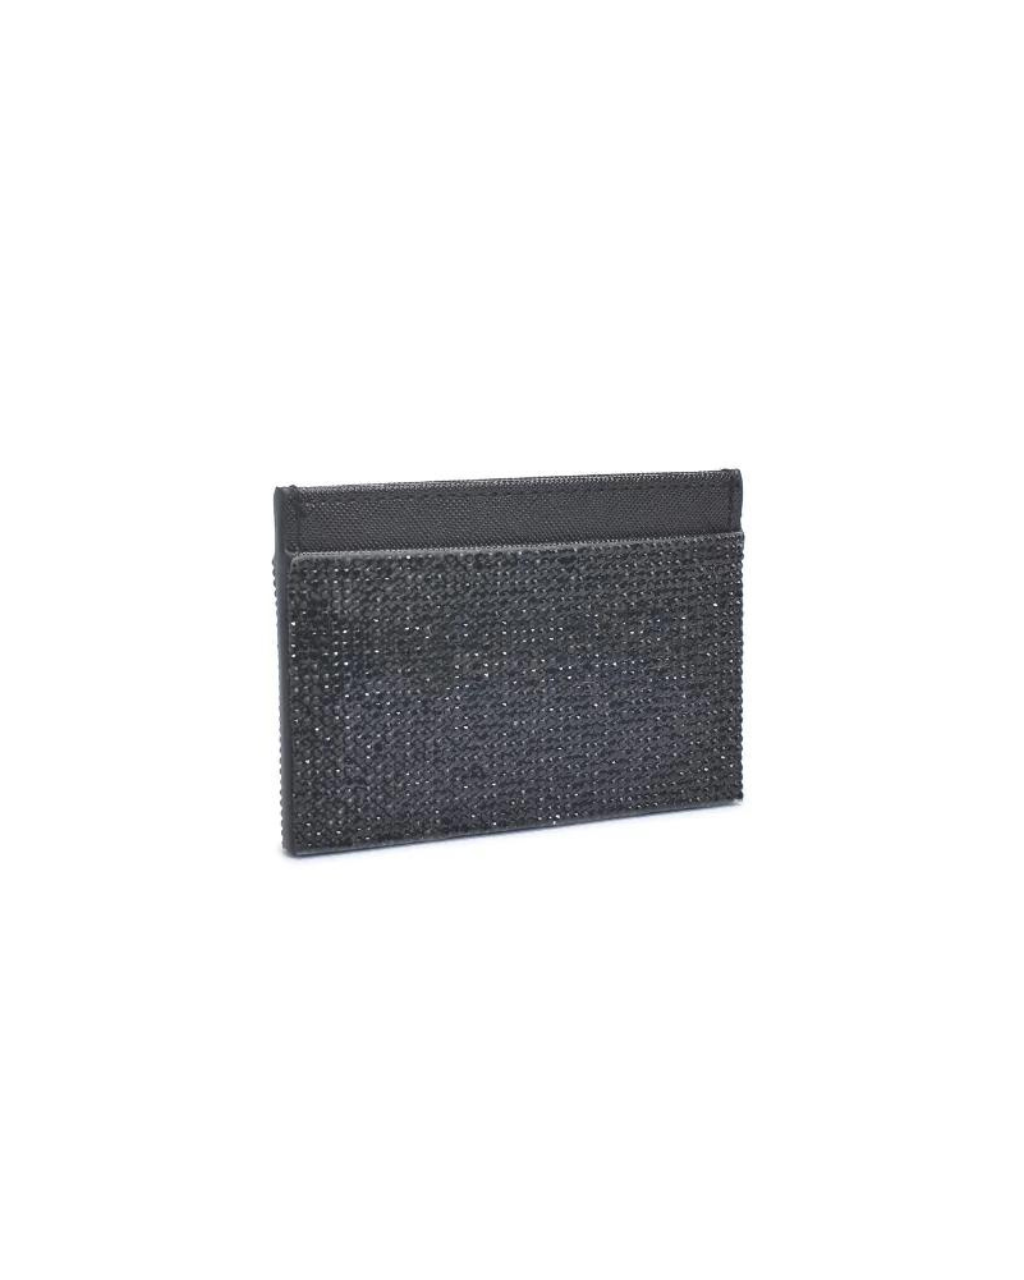 Gigi Cardholder Black, Evening Bag by Urban Expressions | LIT Boutique